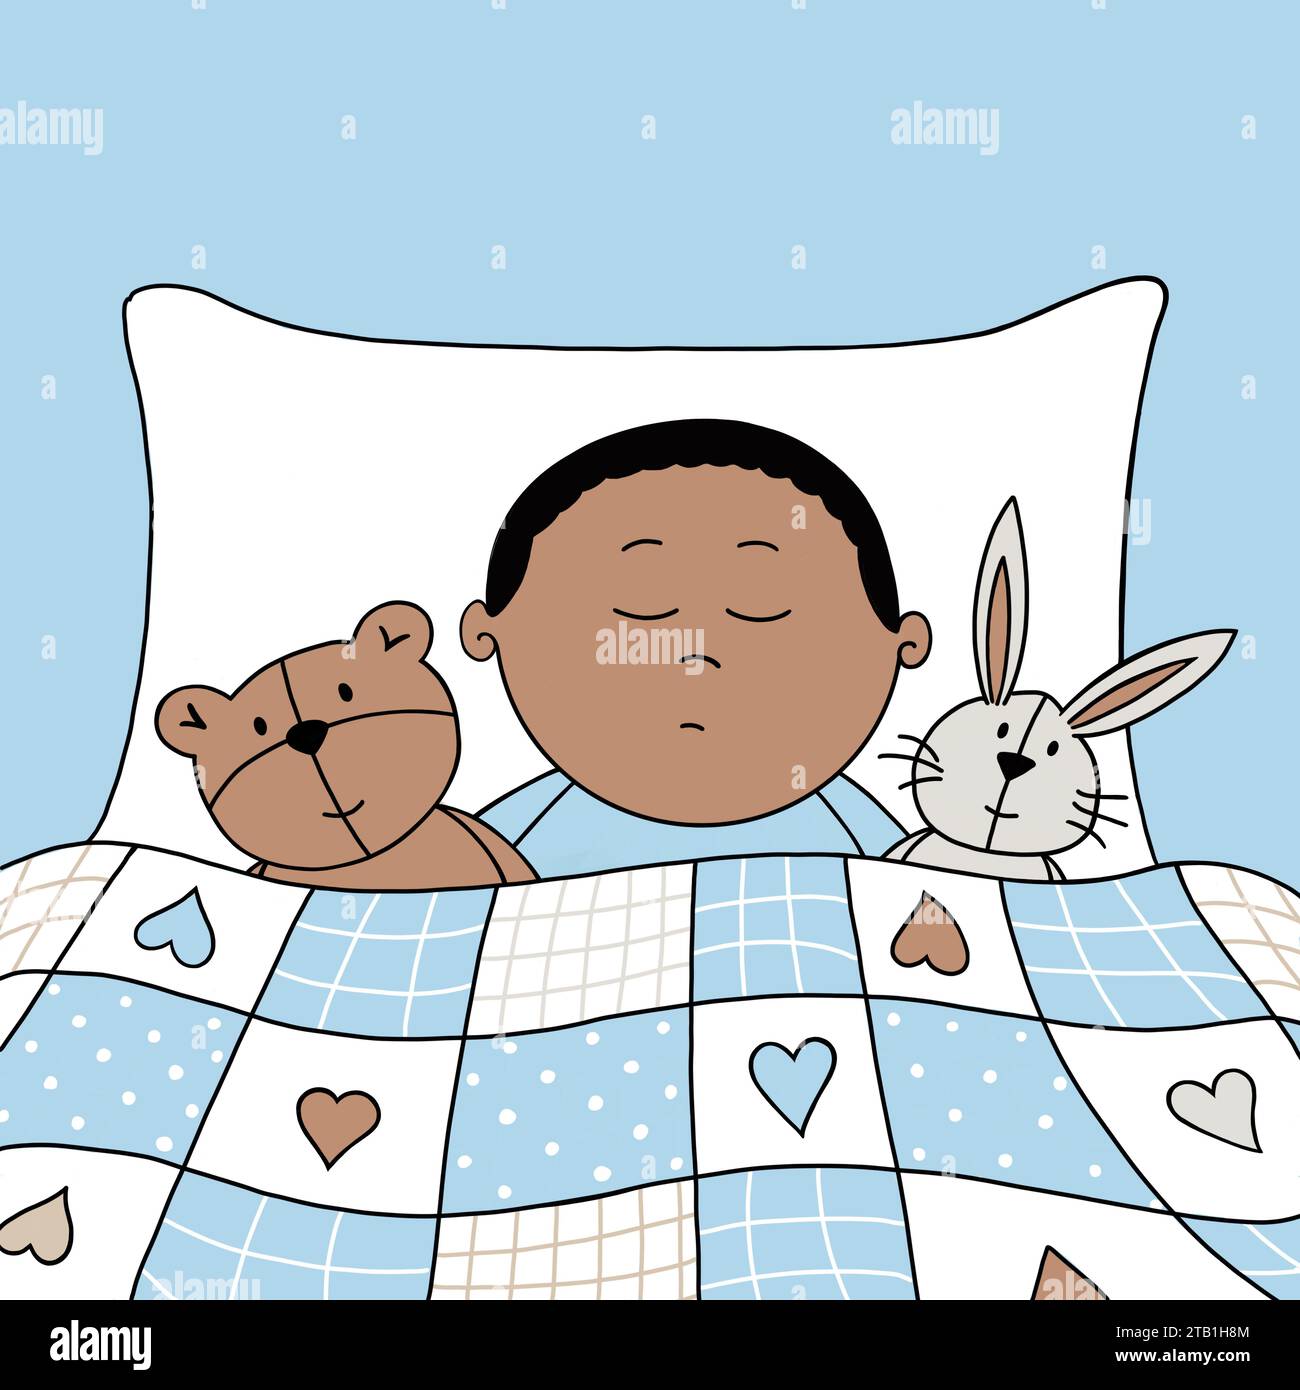 Bébé garçon endormi. Enfant faisant une sieste. Mignon bébé de dessin animé endormi avec ours en peluche et lapin préférés, sous un patchwork bleu confortable. Murs bleus. Banque D'Images